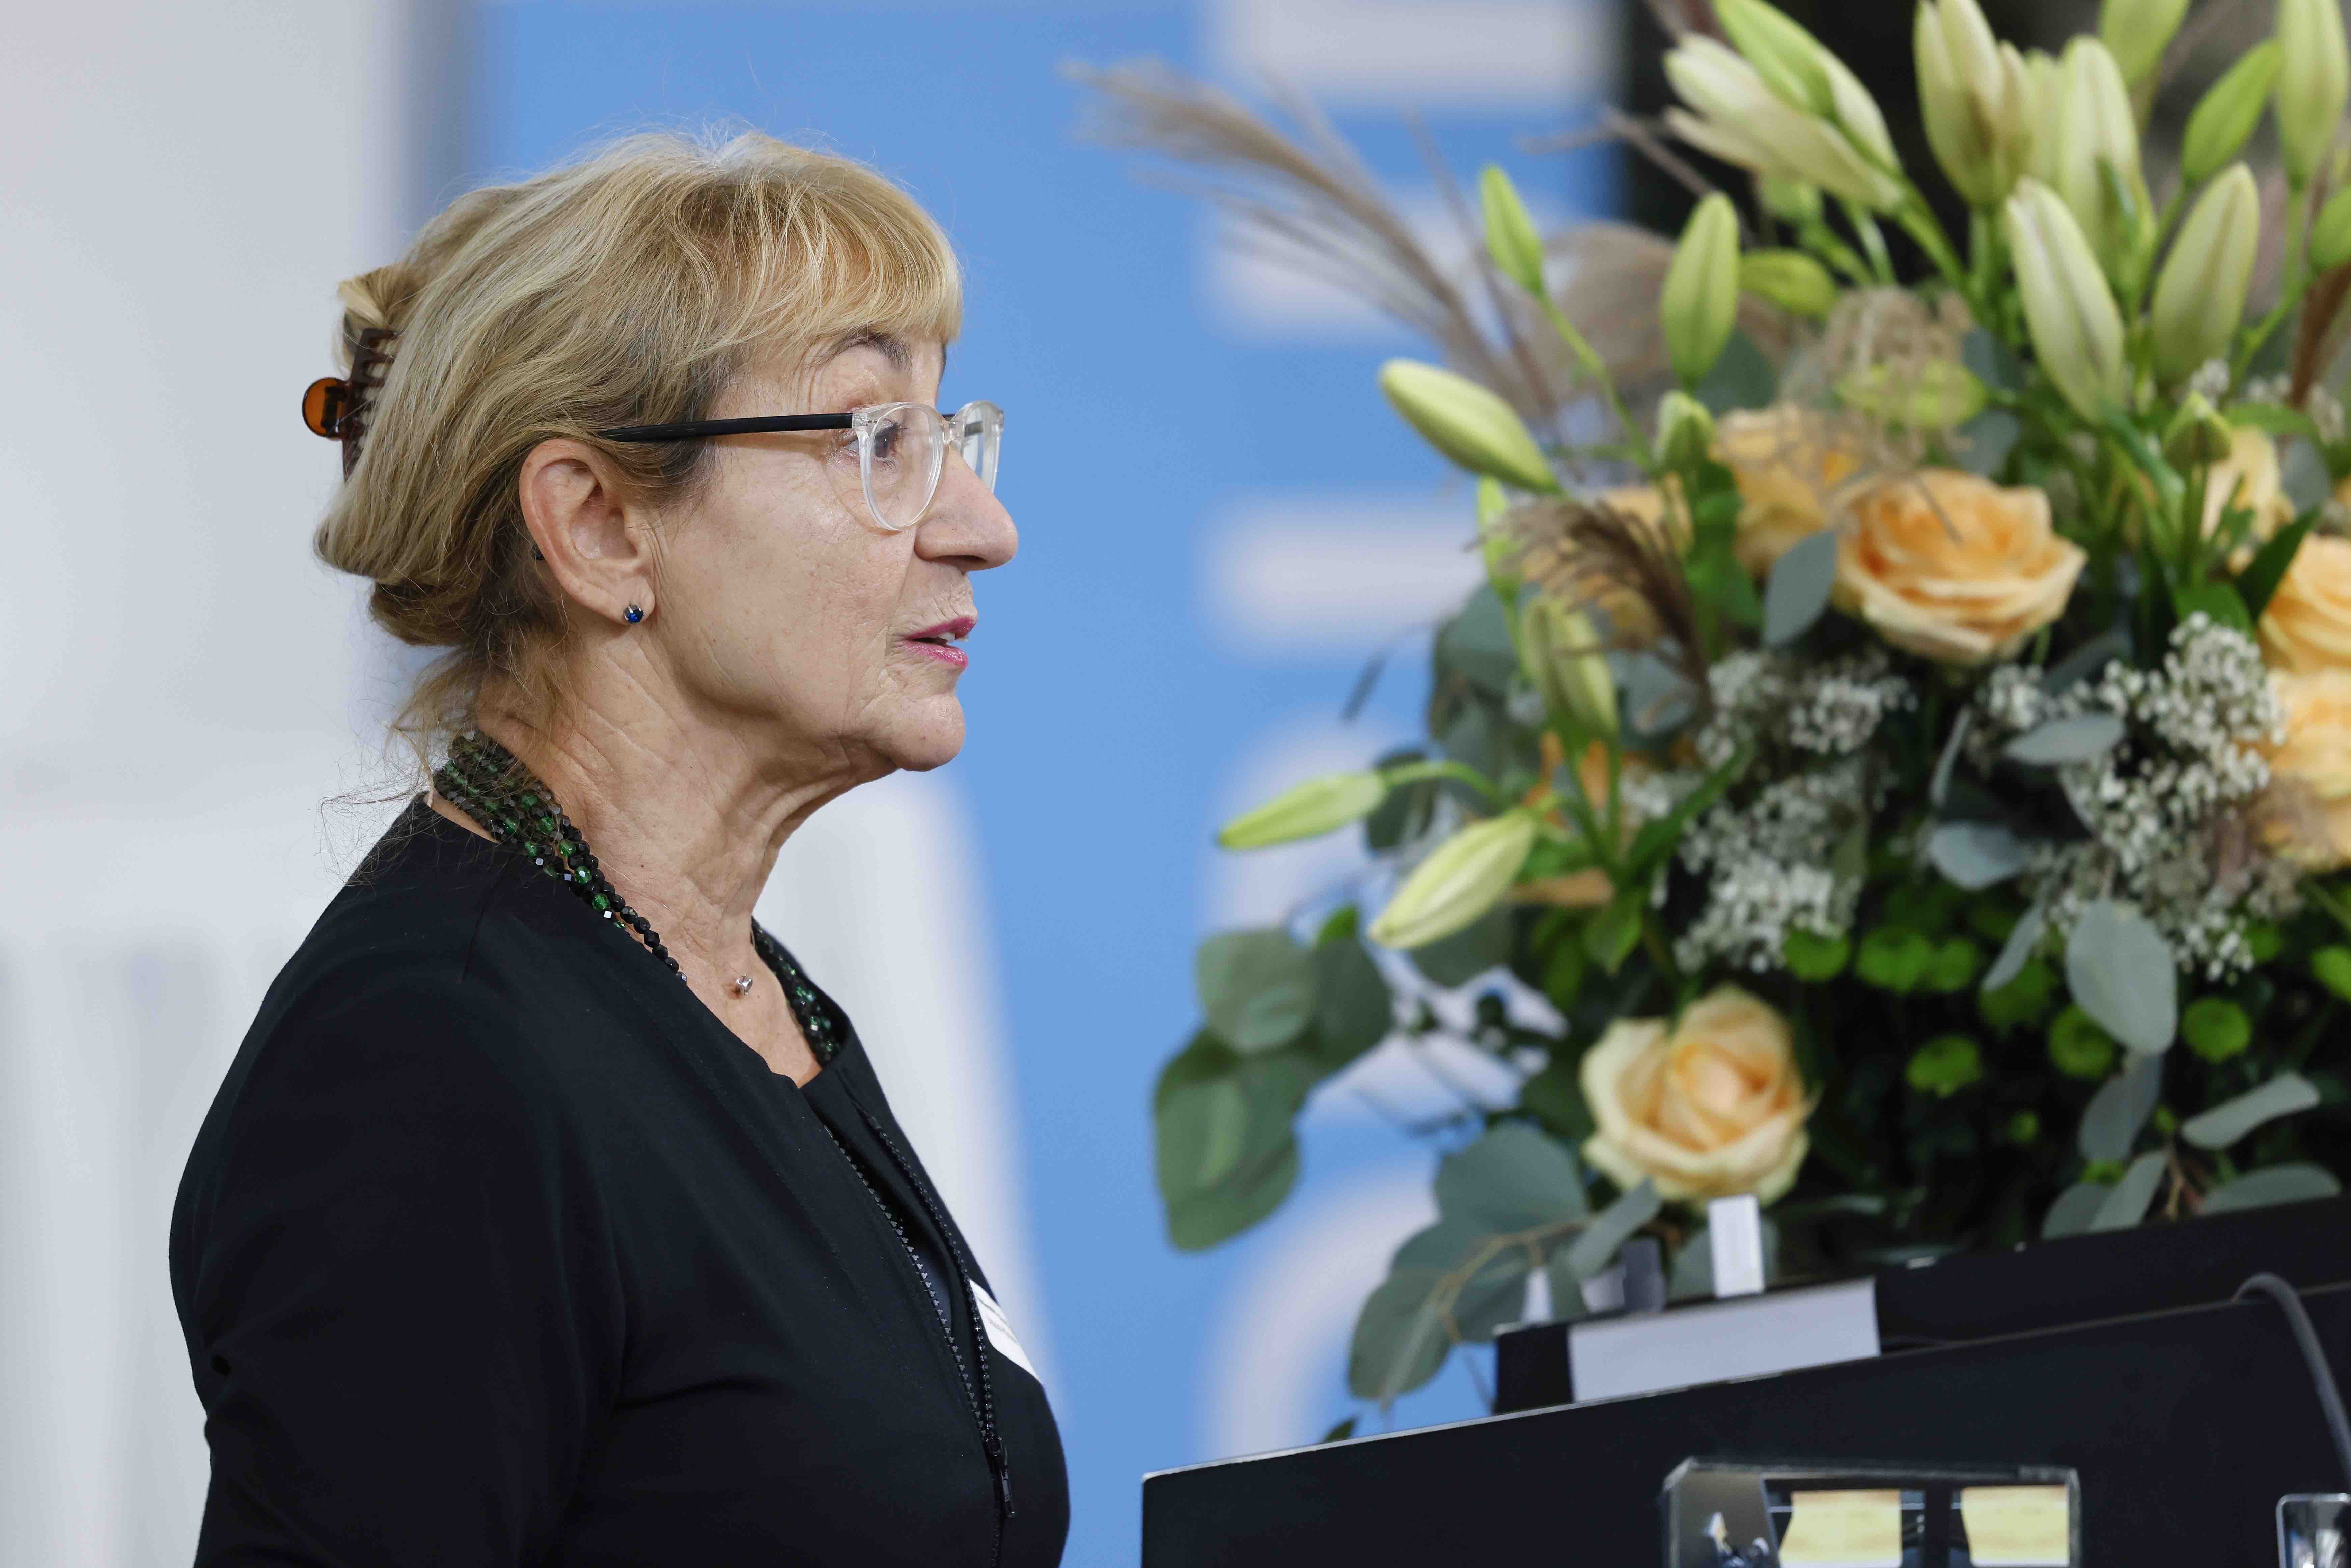 Seitliche Porträtaufnahme der Moderatorin Ursula Hürzeler. Sie trägt ein schwarzes Oberteil, im Hintergrund sind ein Blumenstrauss und ein Banner mit dem blauweissen Forumslogo sichtbar.